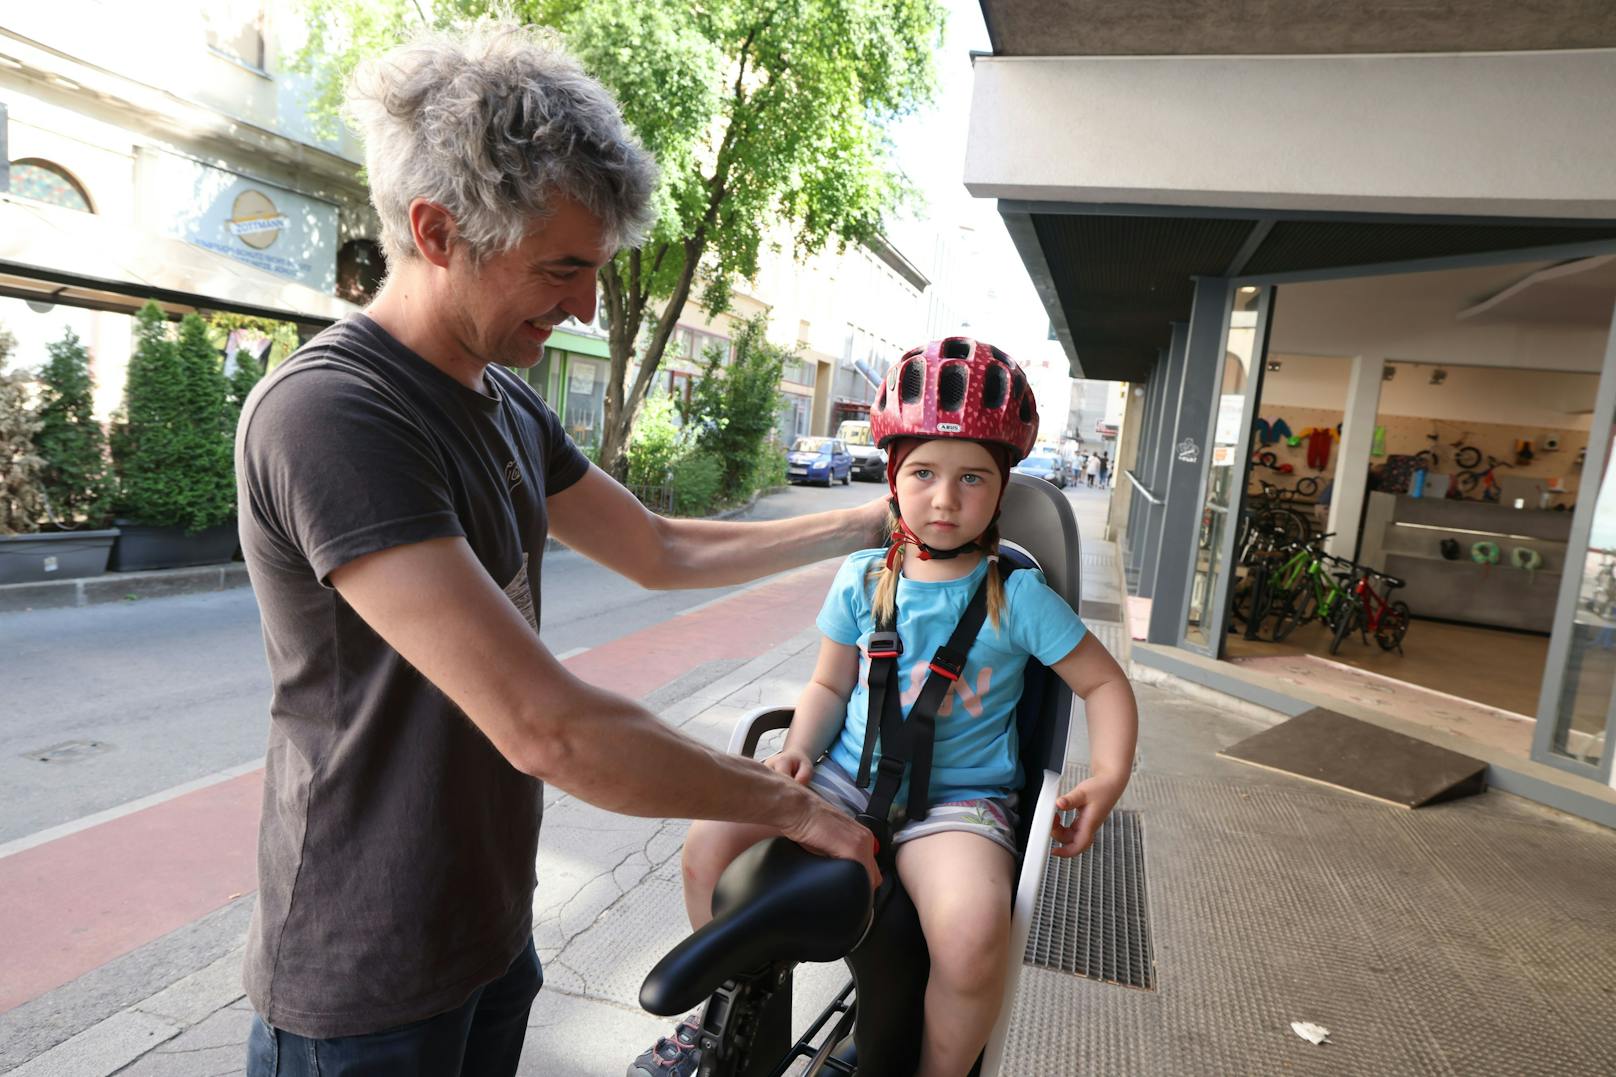 Sicher in der Stadt unterwegs mit Kind und Fahrrad